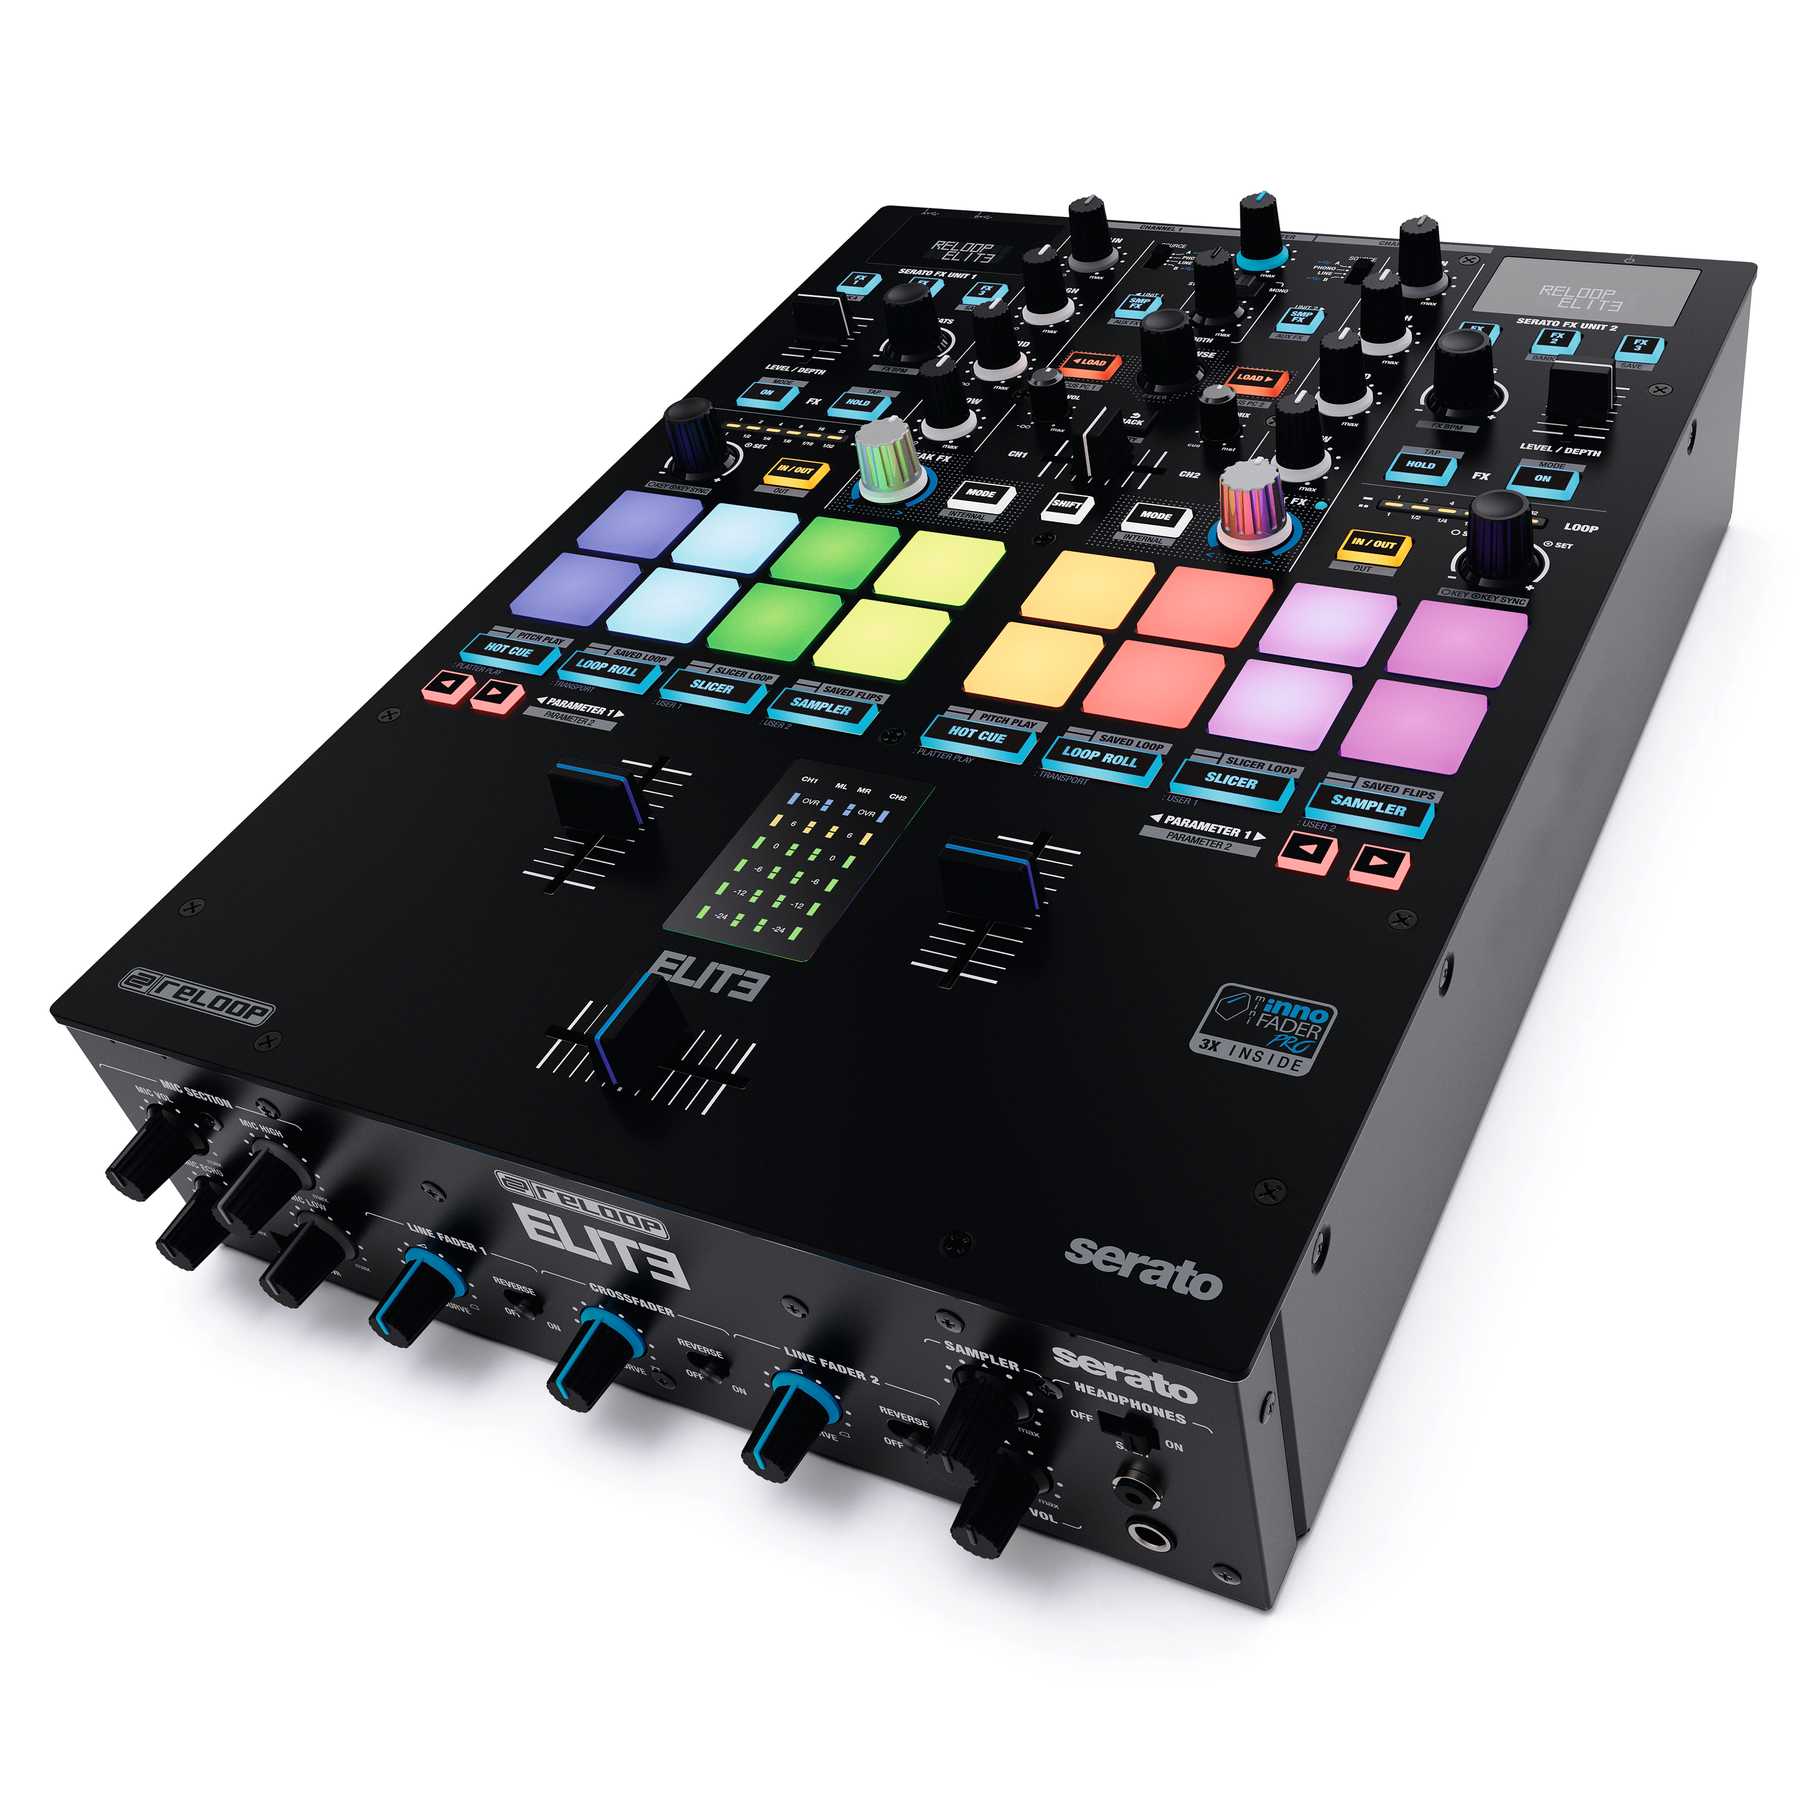 DJ-микшеры и оборудование Reloop Elite dj станции комплекты контроллеры reloop beatpad 2